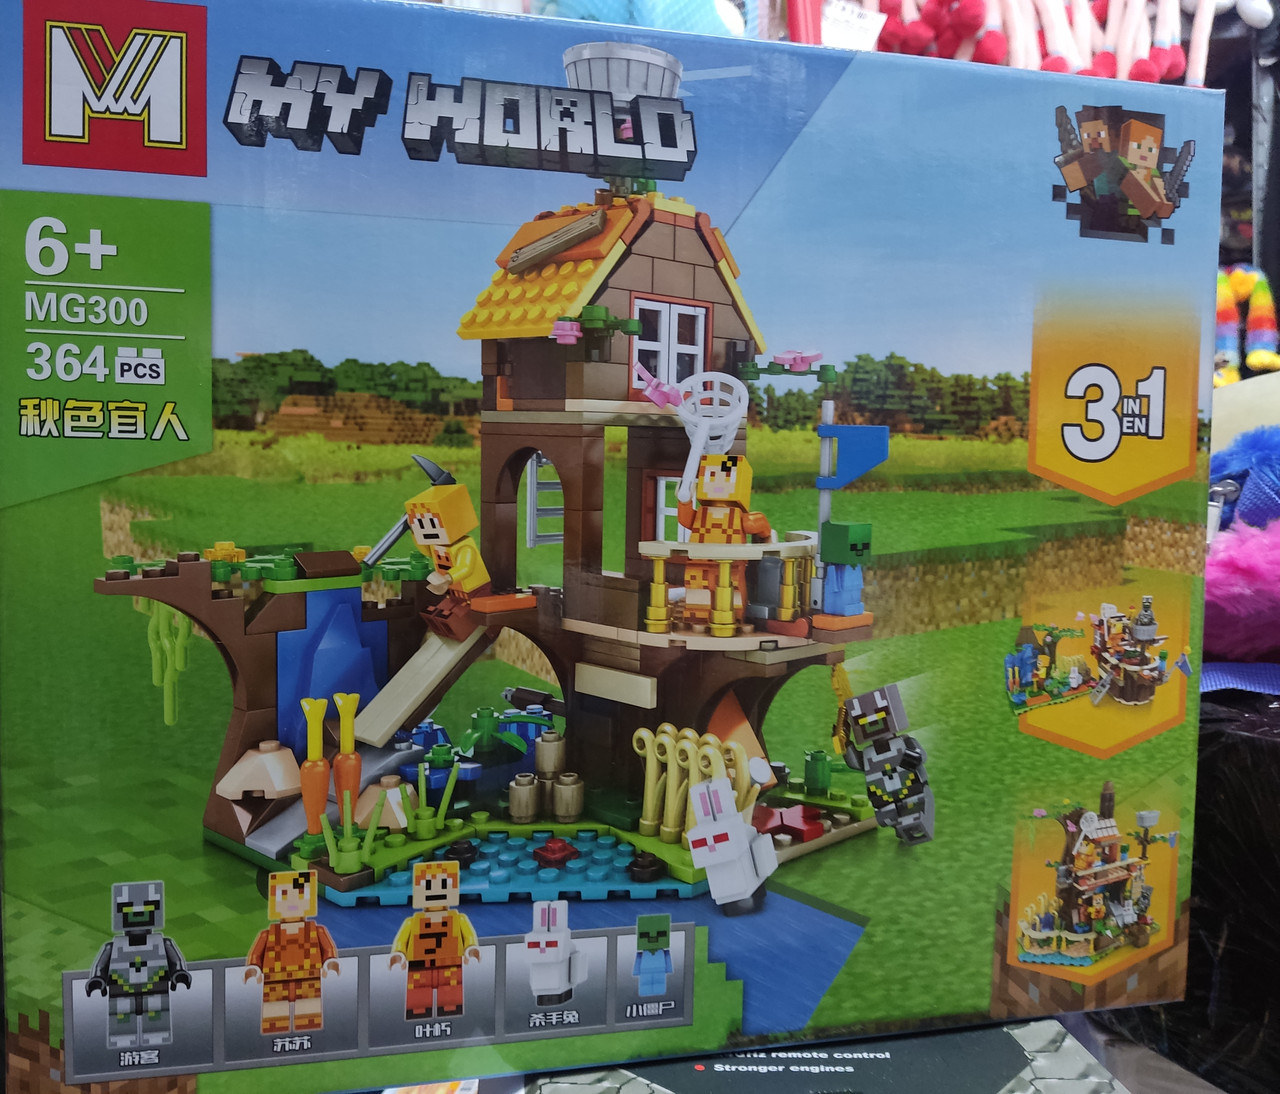 Конструктор MG 300 Майнкрафт Lego Minecraft майданчик 364 дет 3 в 1